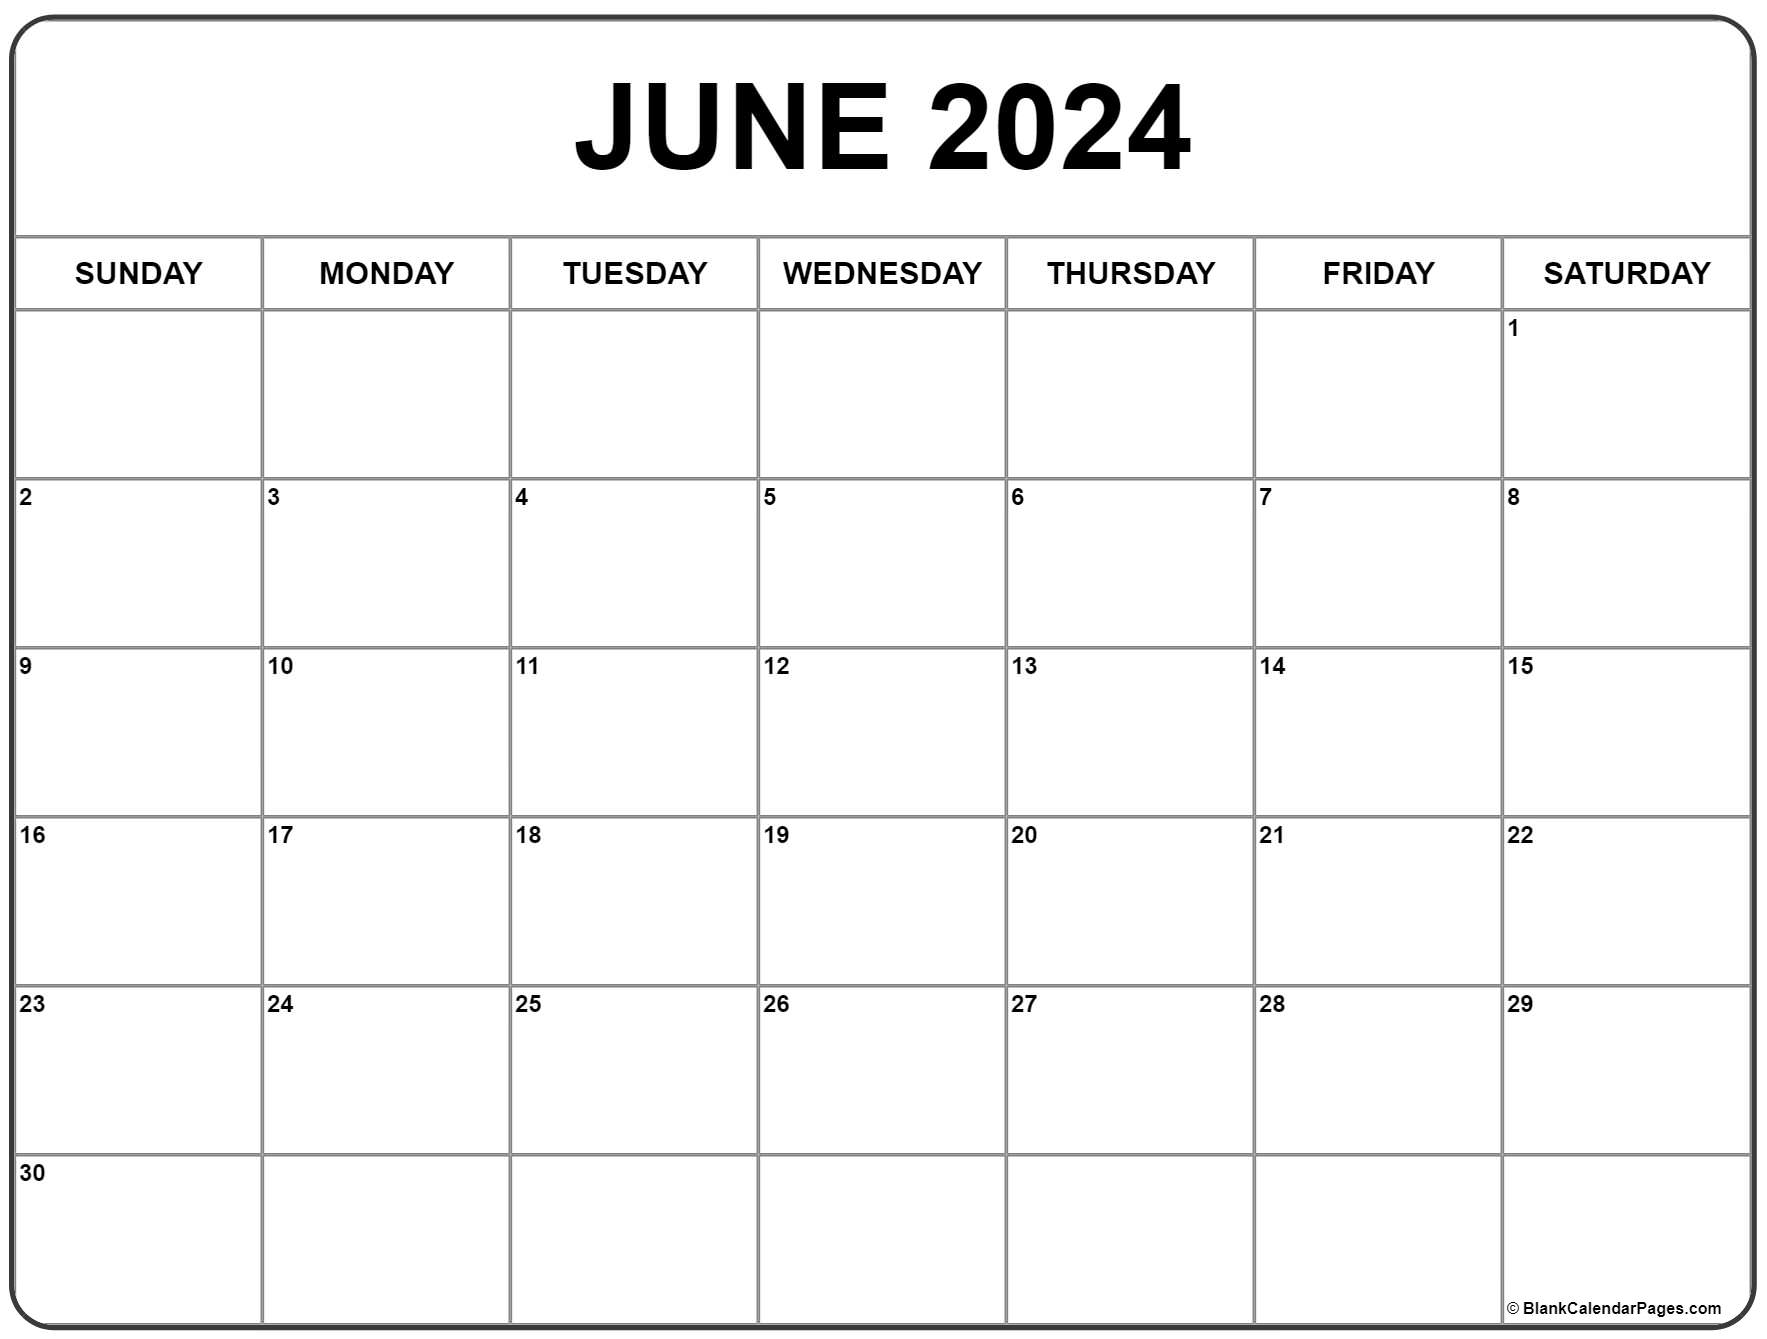 June 2024 Calendar | Free Printable Calendar for June 2024 Calendar Free Printable